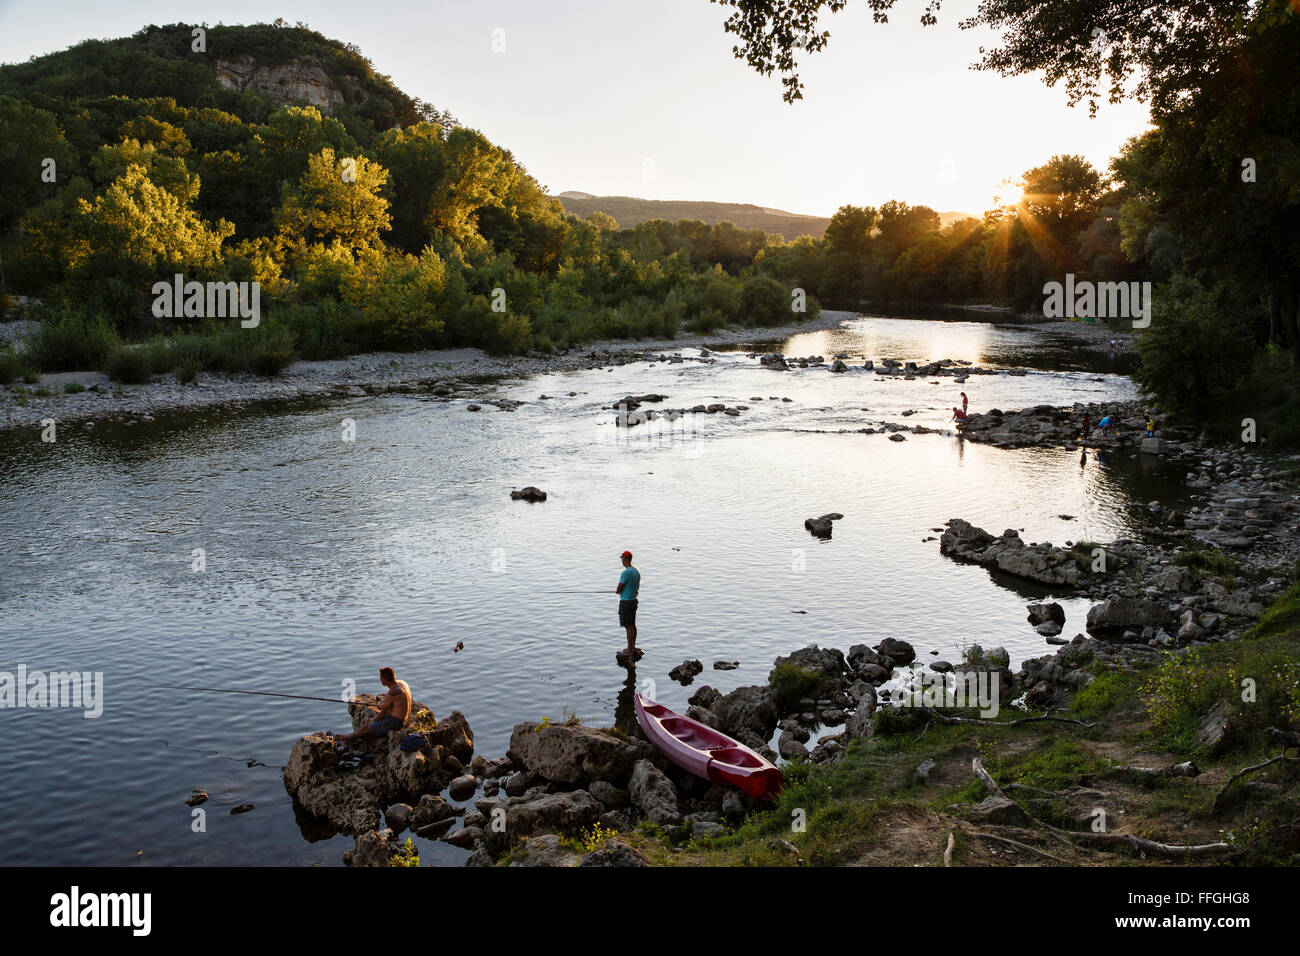 La pêche dans la rivière Ardèche sur une paisible soirée d'été, Vallon-Pont-d'Arc, France. Banque D'Images